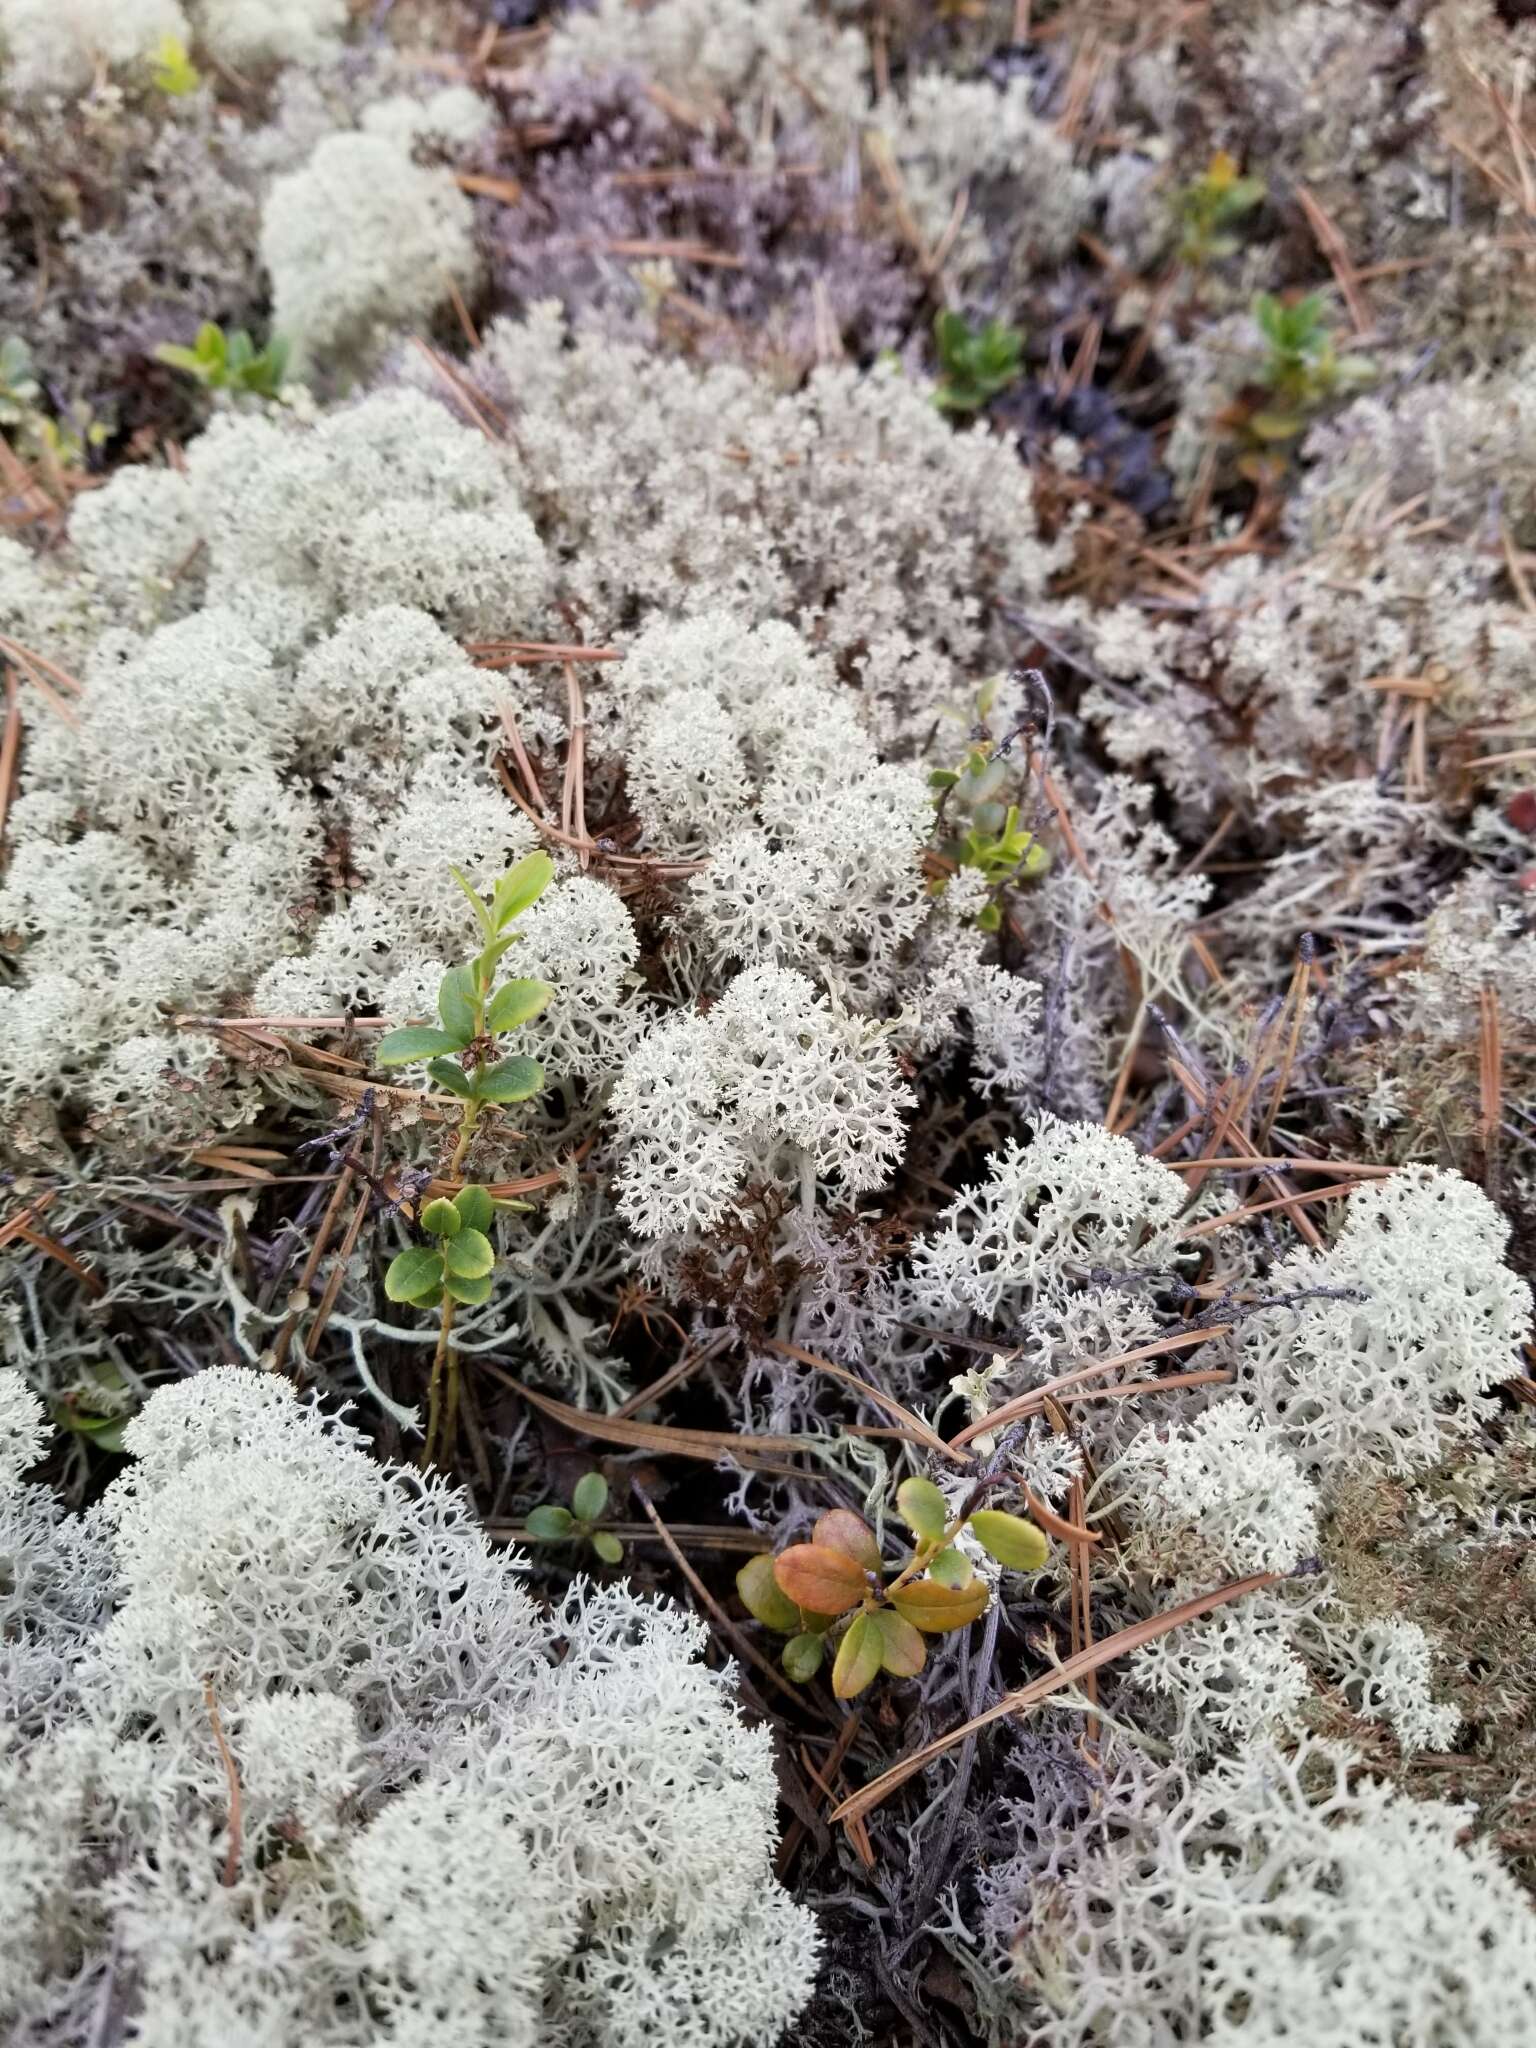 Image of star reindeer lichen